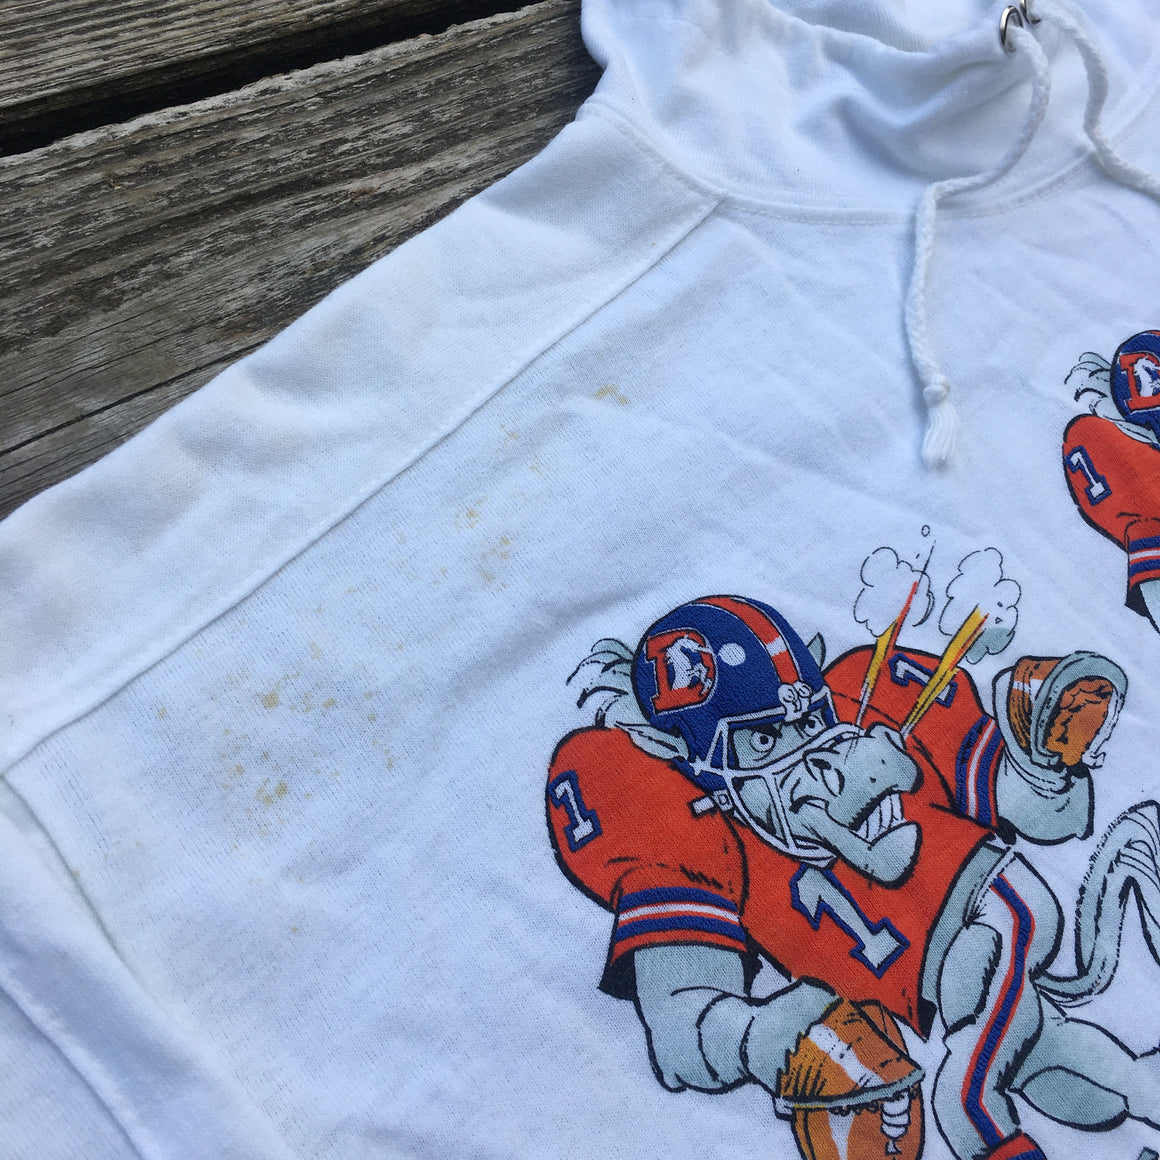 Denver Broncos sweatshirt with pants - M / L